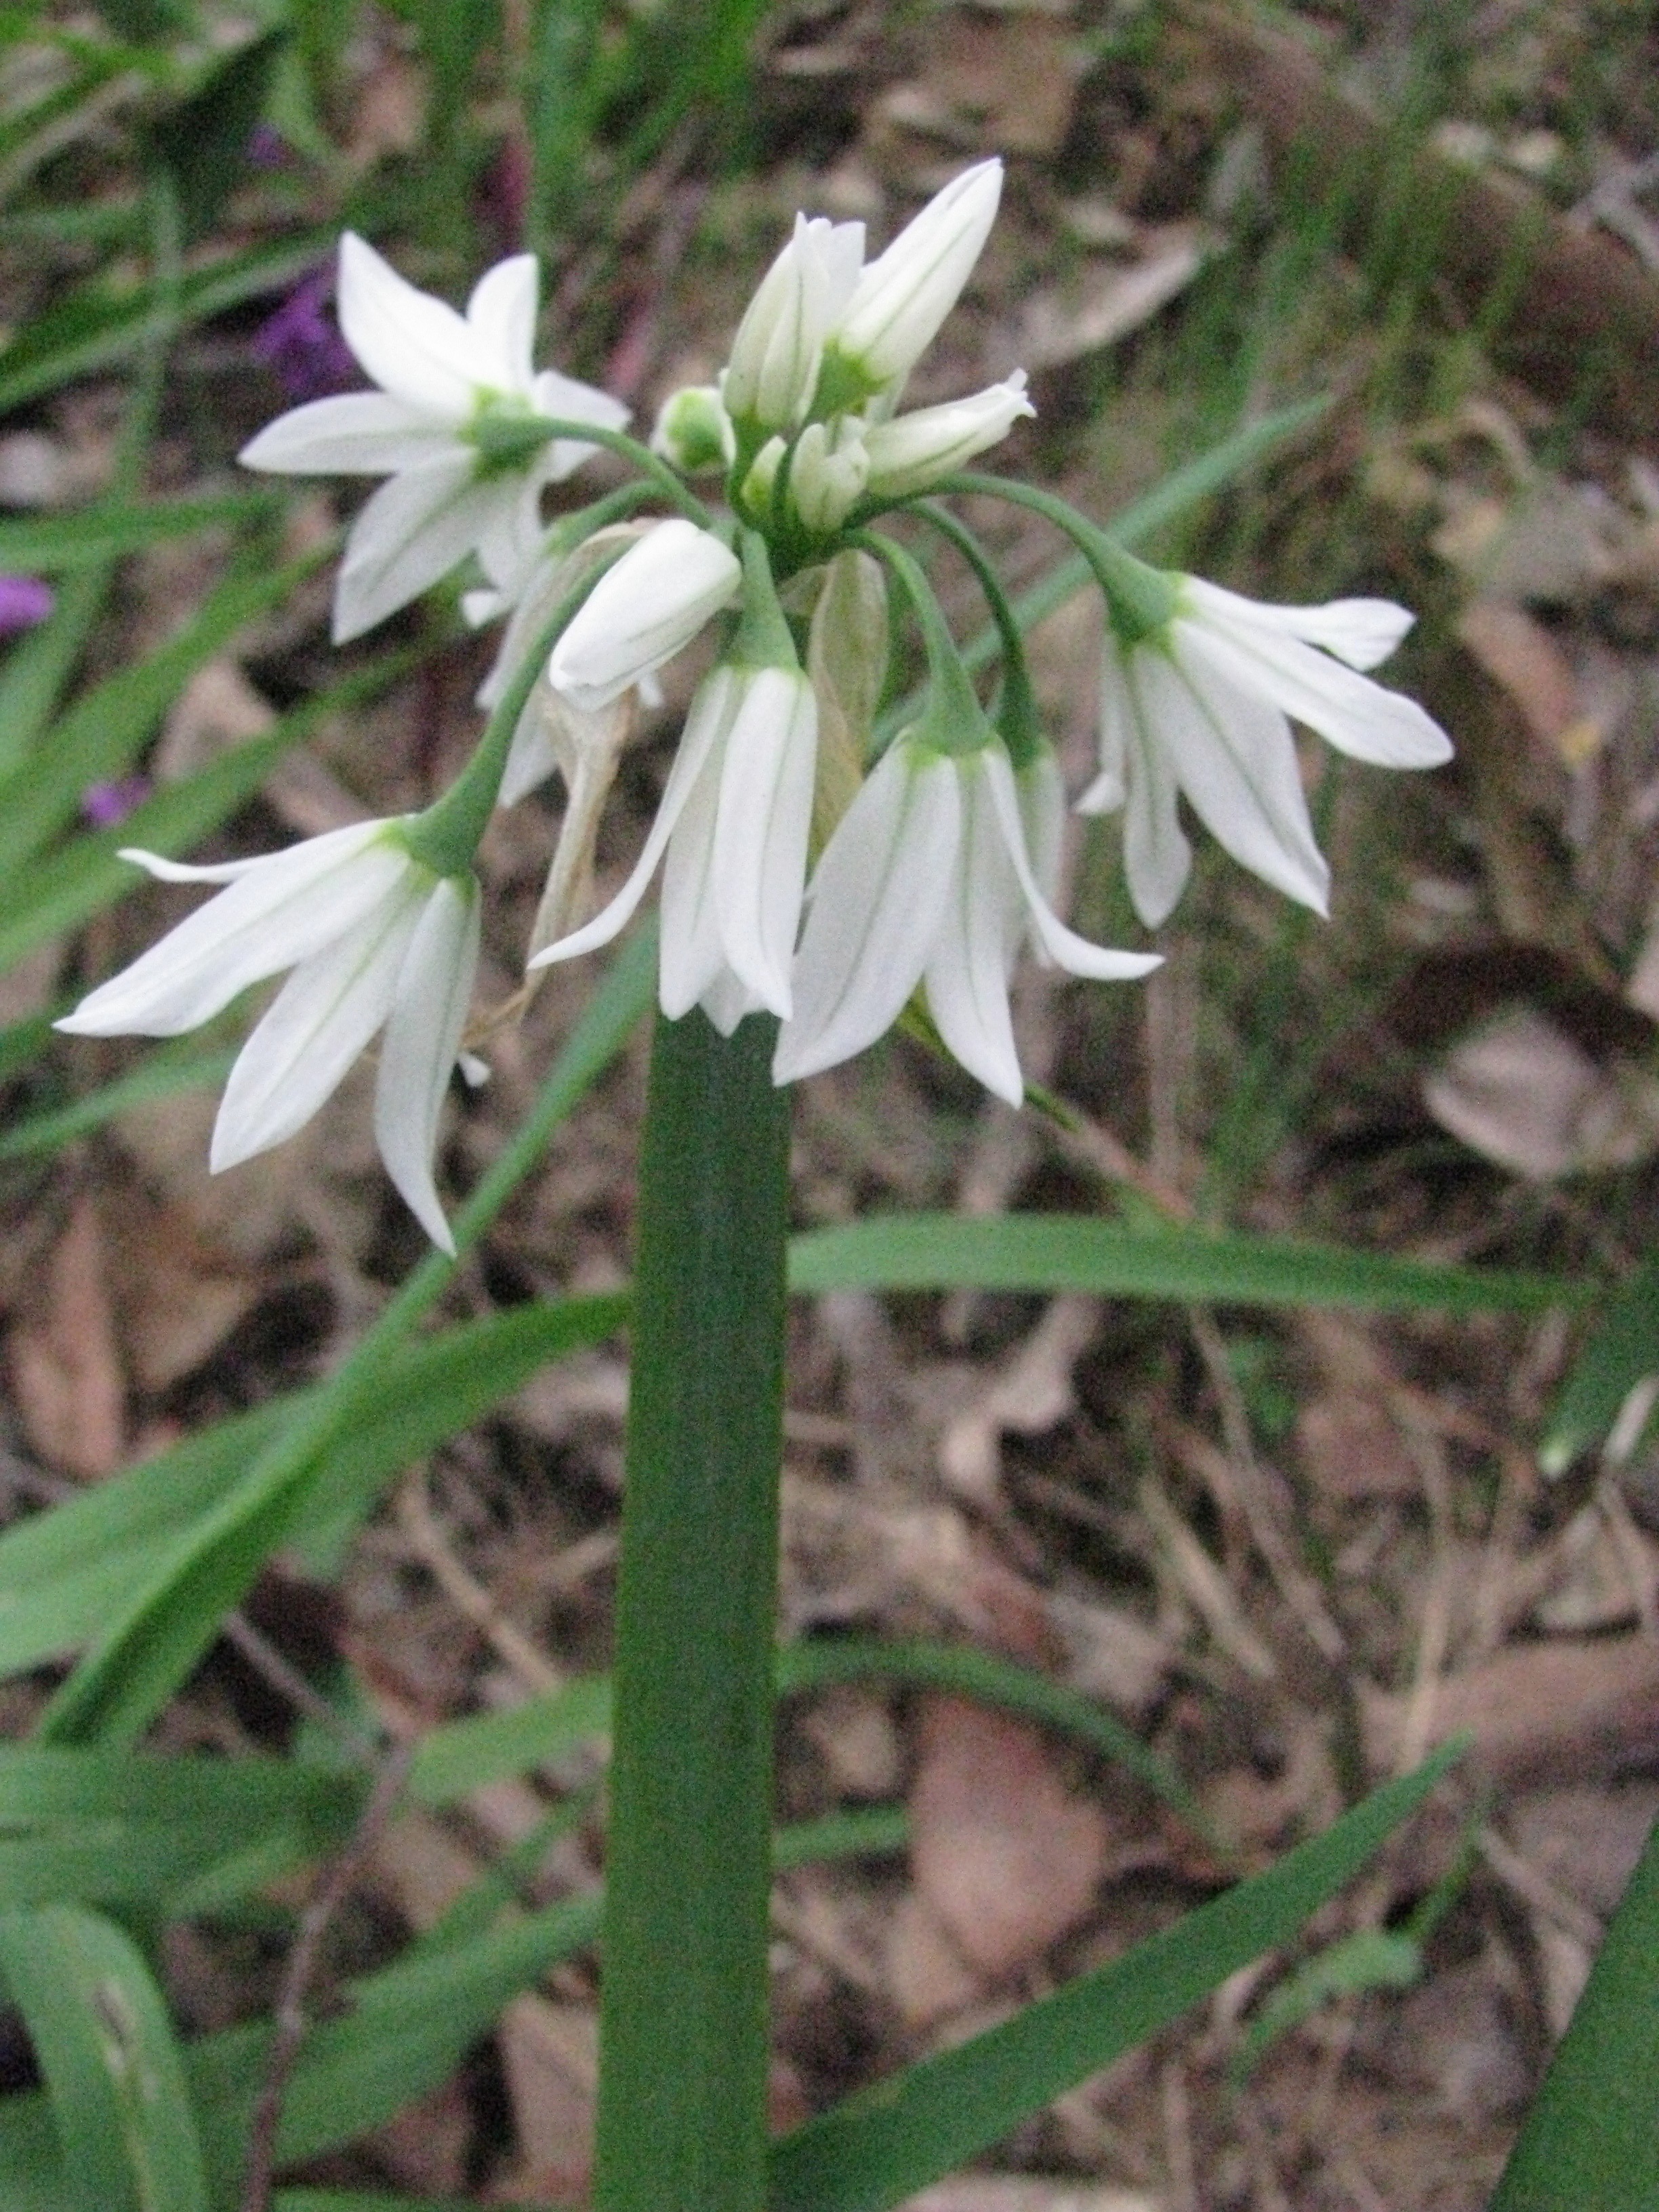 Allium triquetrum (rights holder: Arthur Chapman)